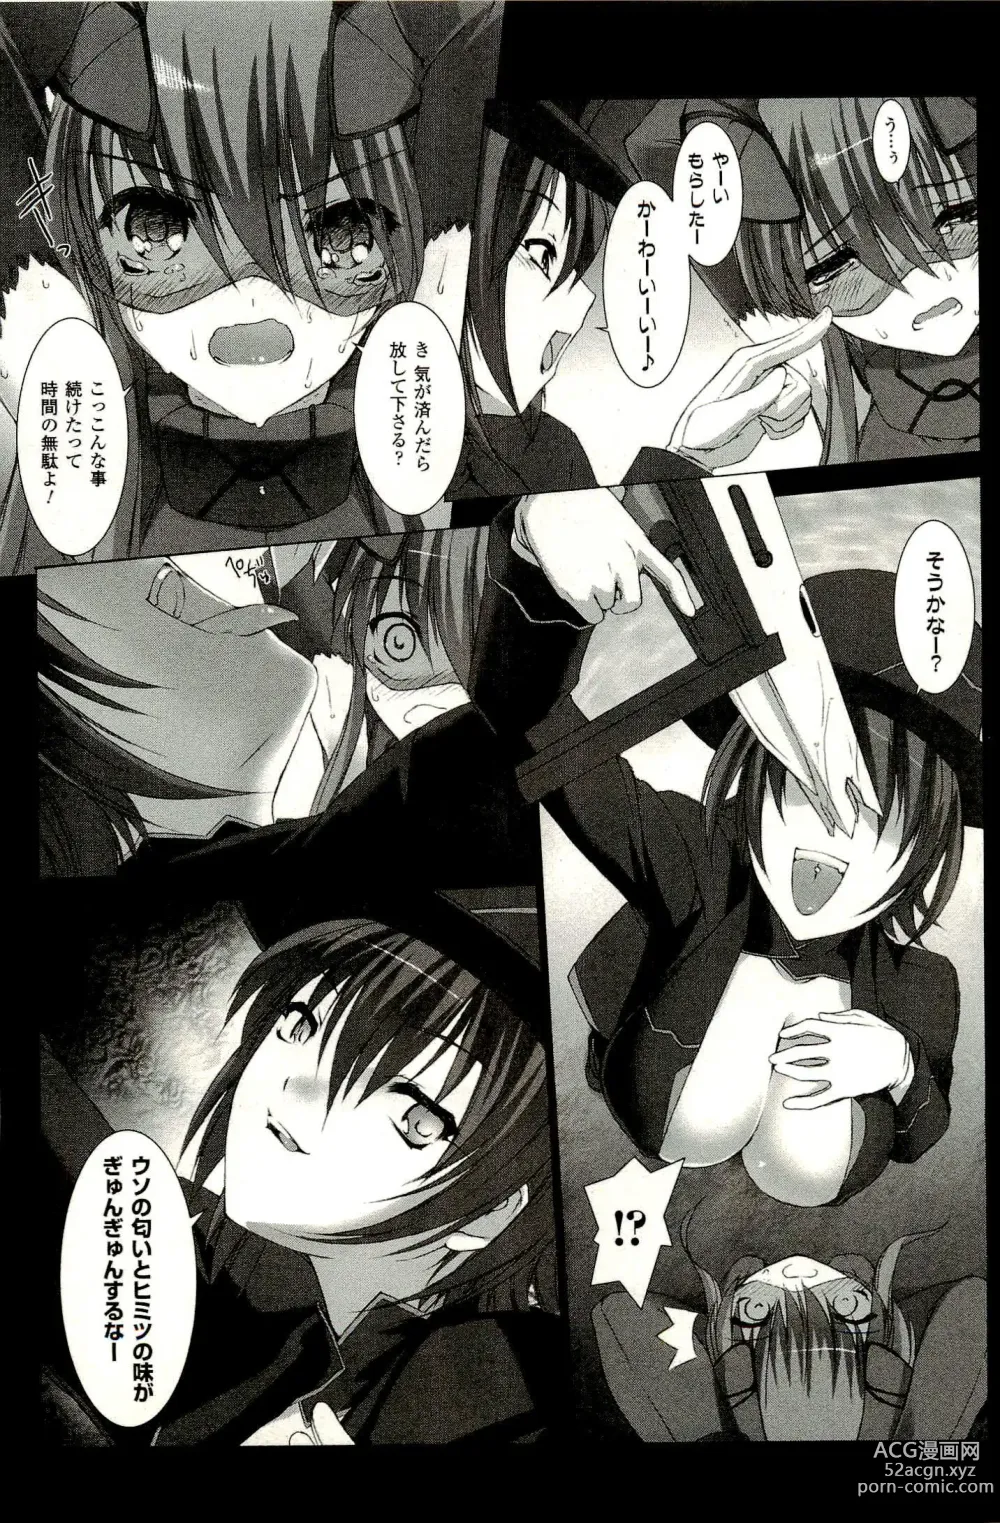 Page 195 of manga Ziggurat 1